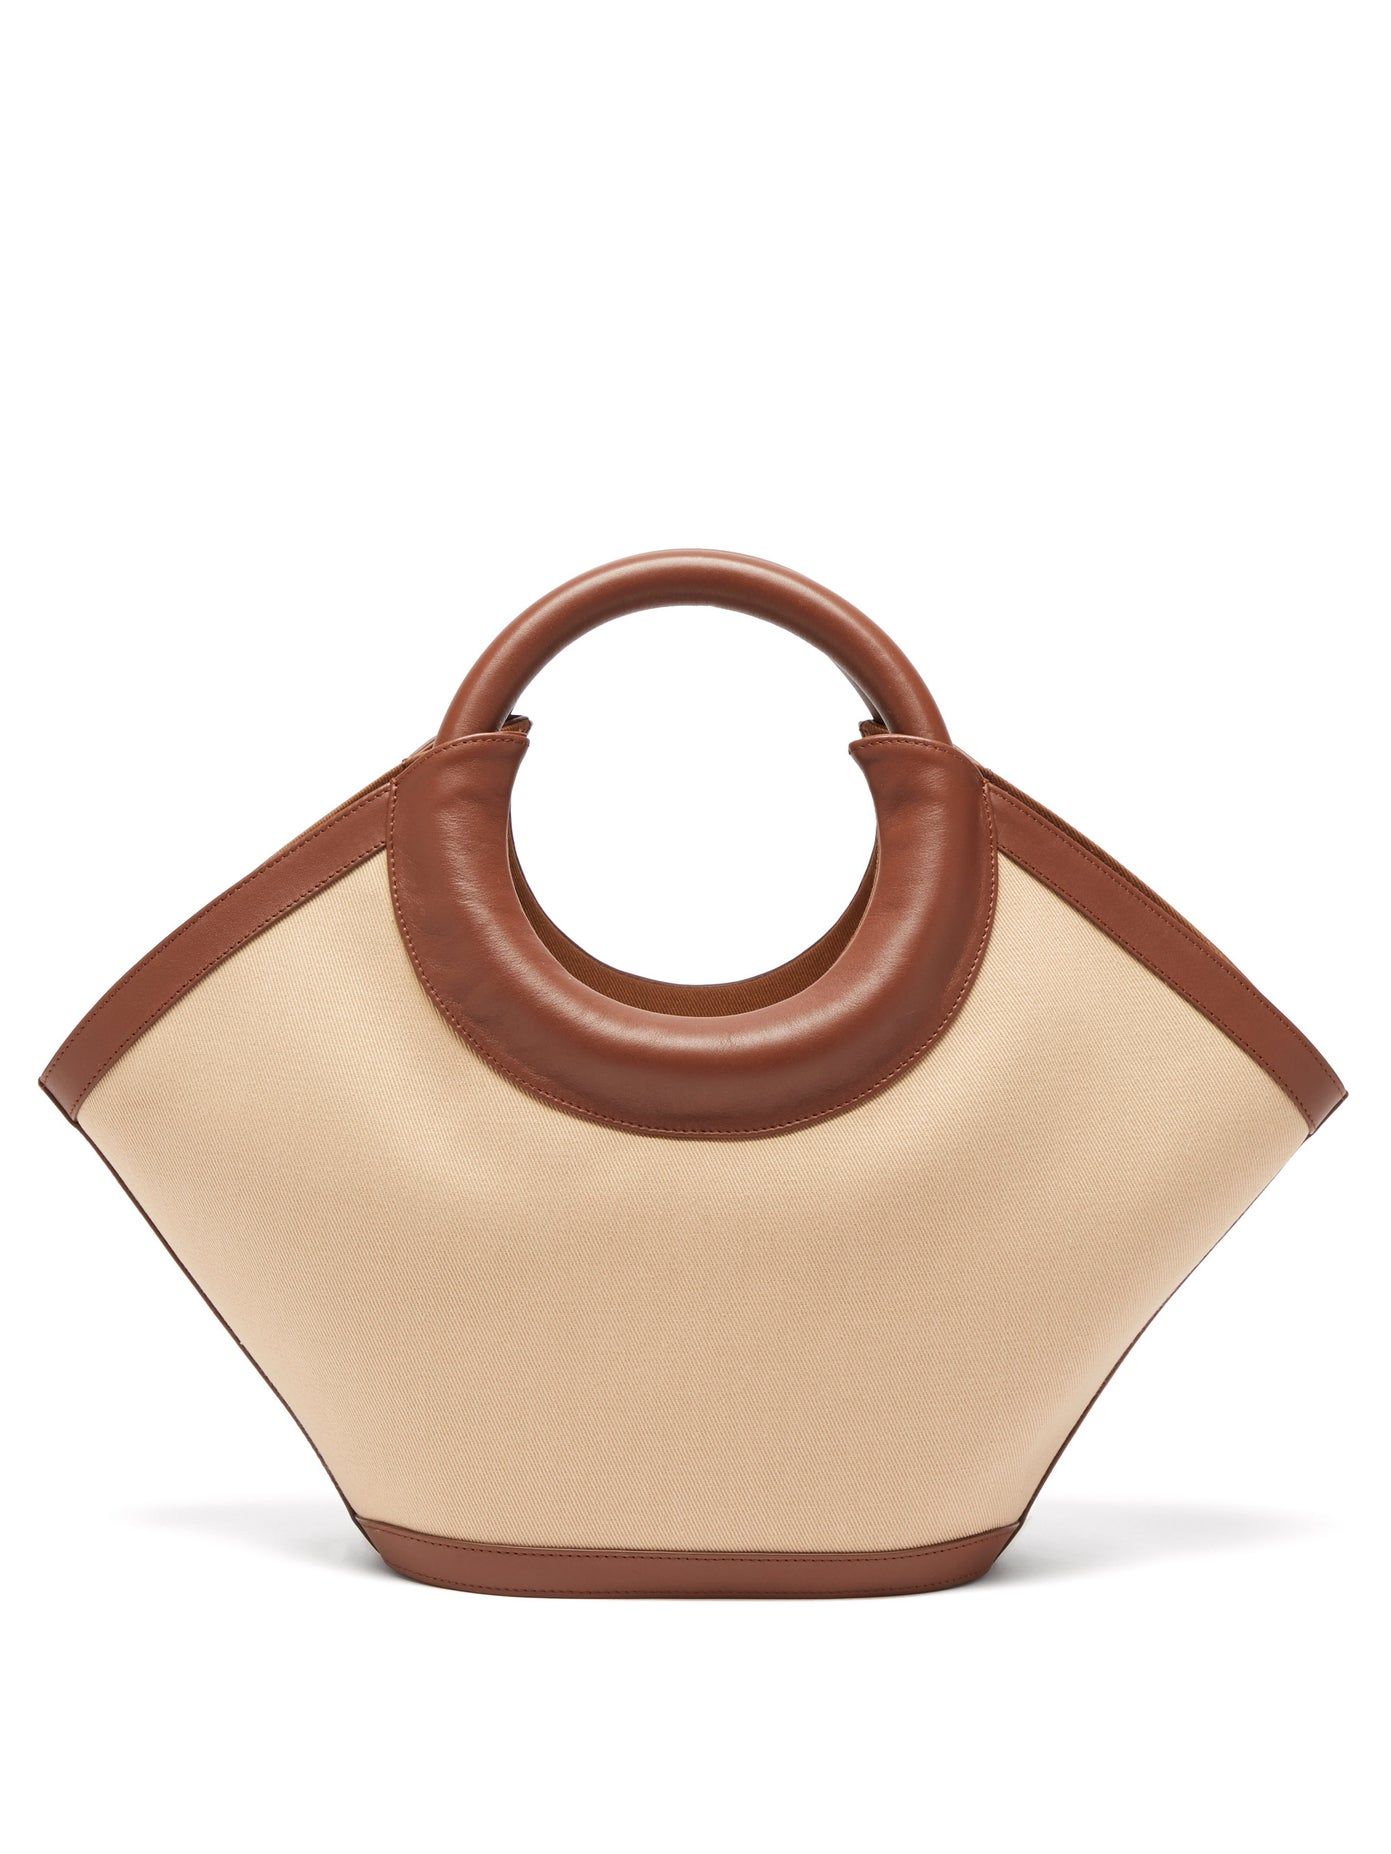 8 Best Affordable Designer Handbag Brands to Buy Right Now